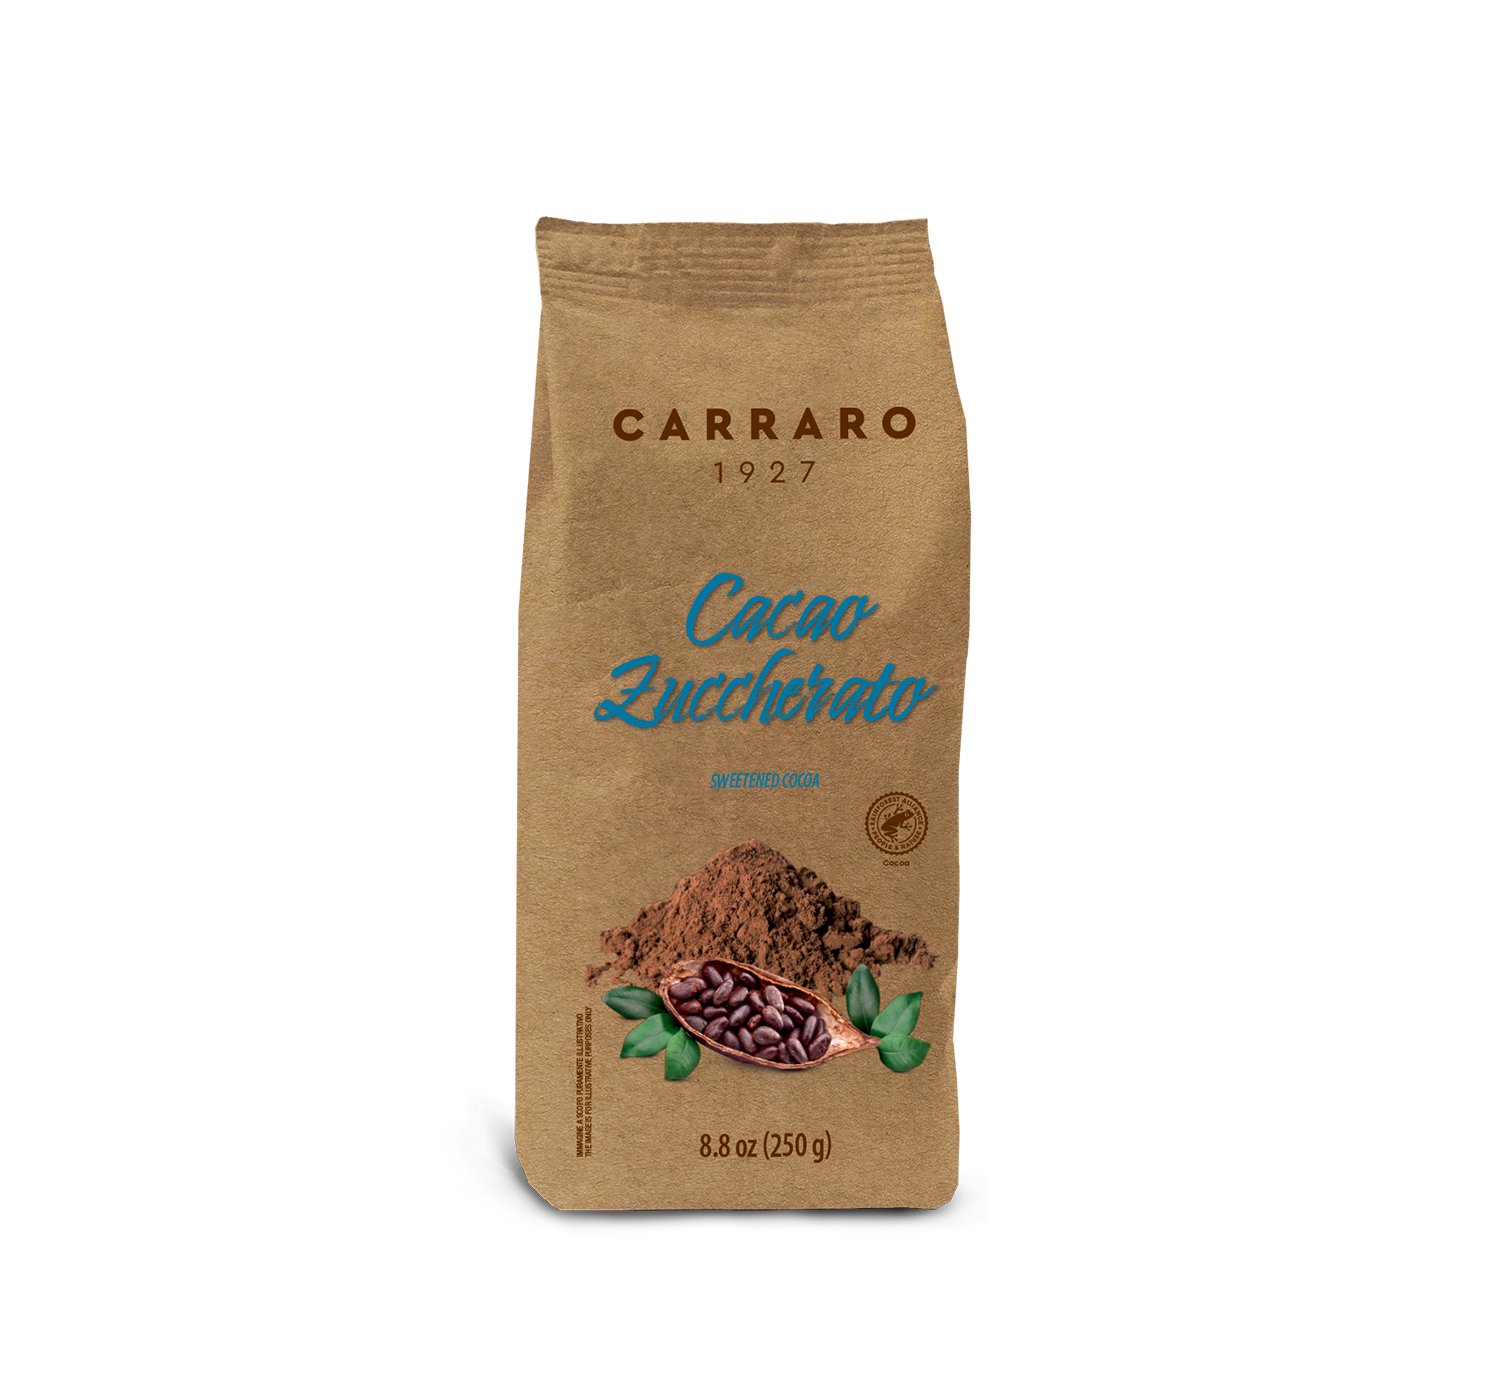 Cocoa - Sweetened Cocoa – 250 g - Shop online Caffè Carraro